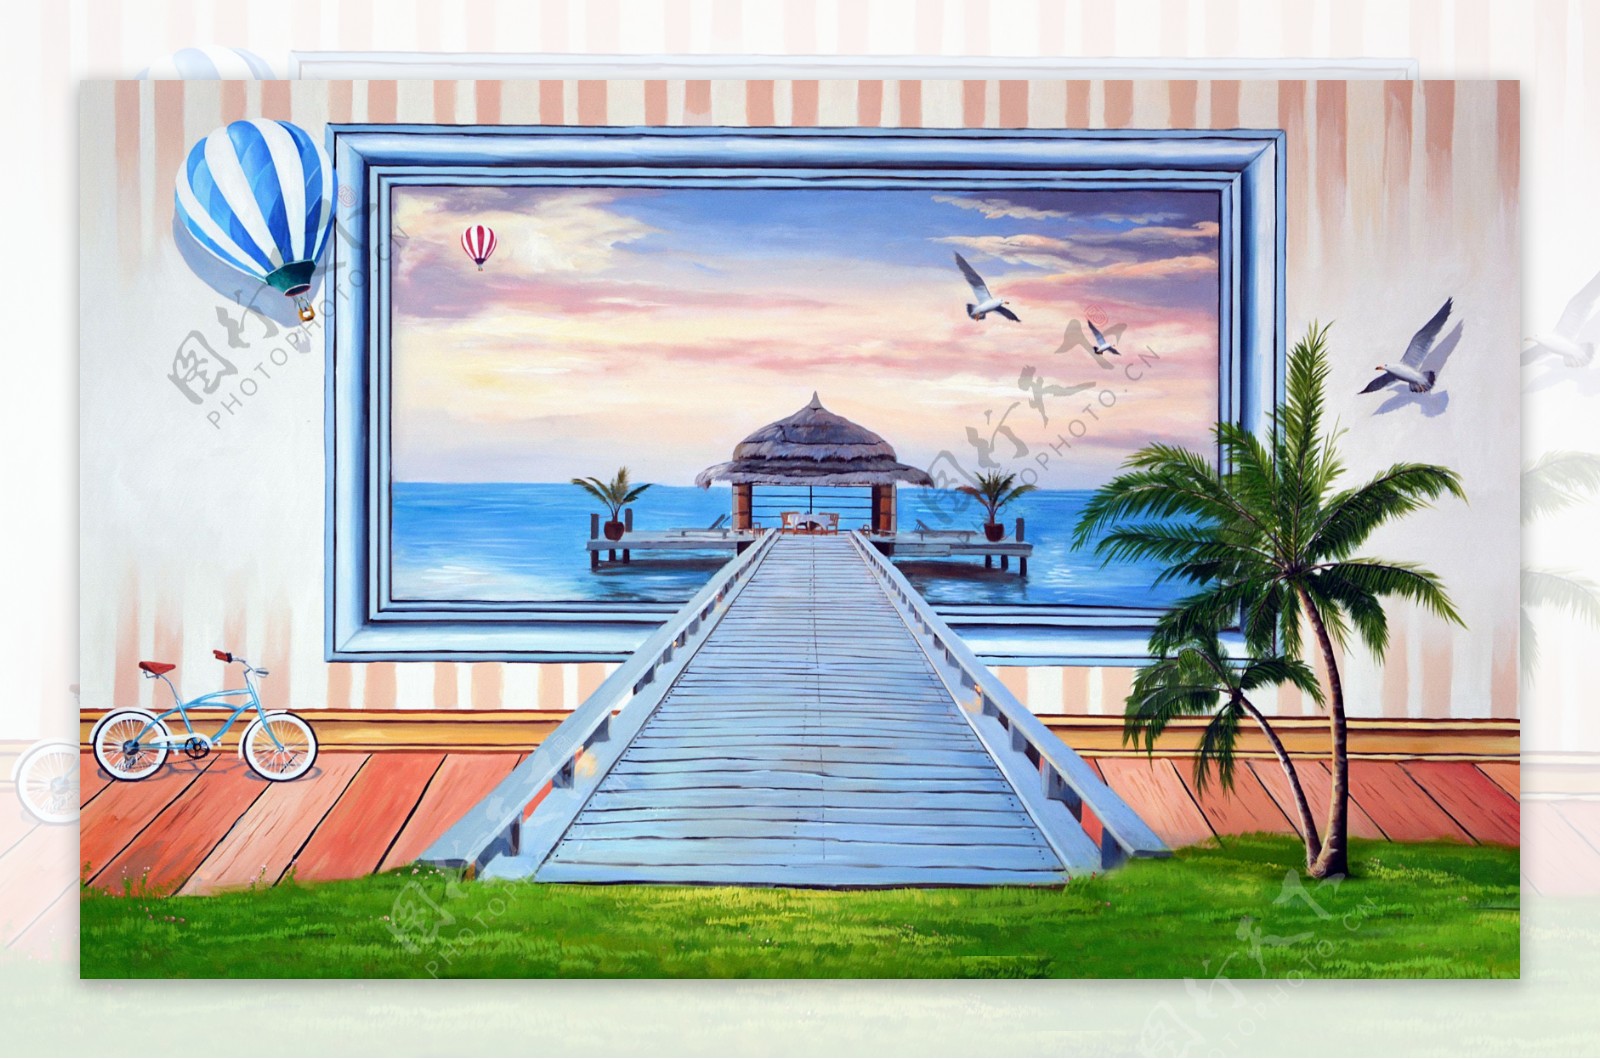 3D立体壁画唯美海景背景墙